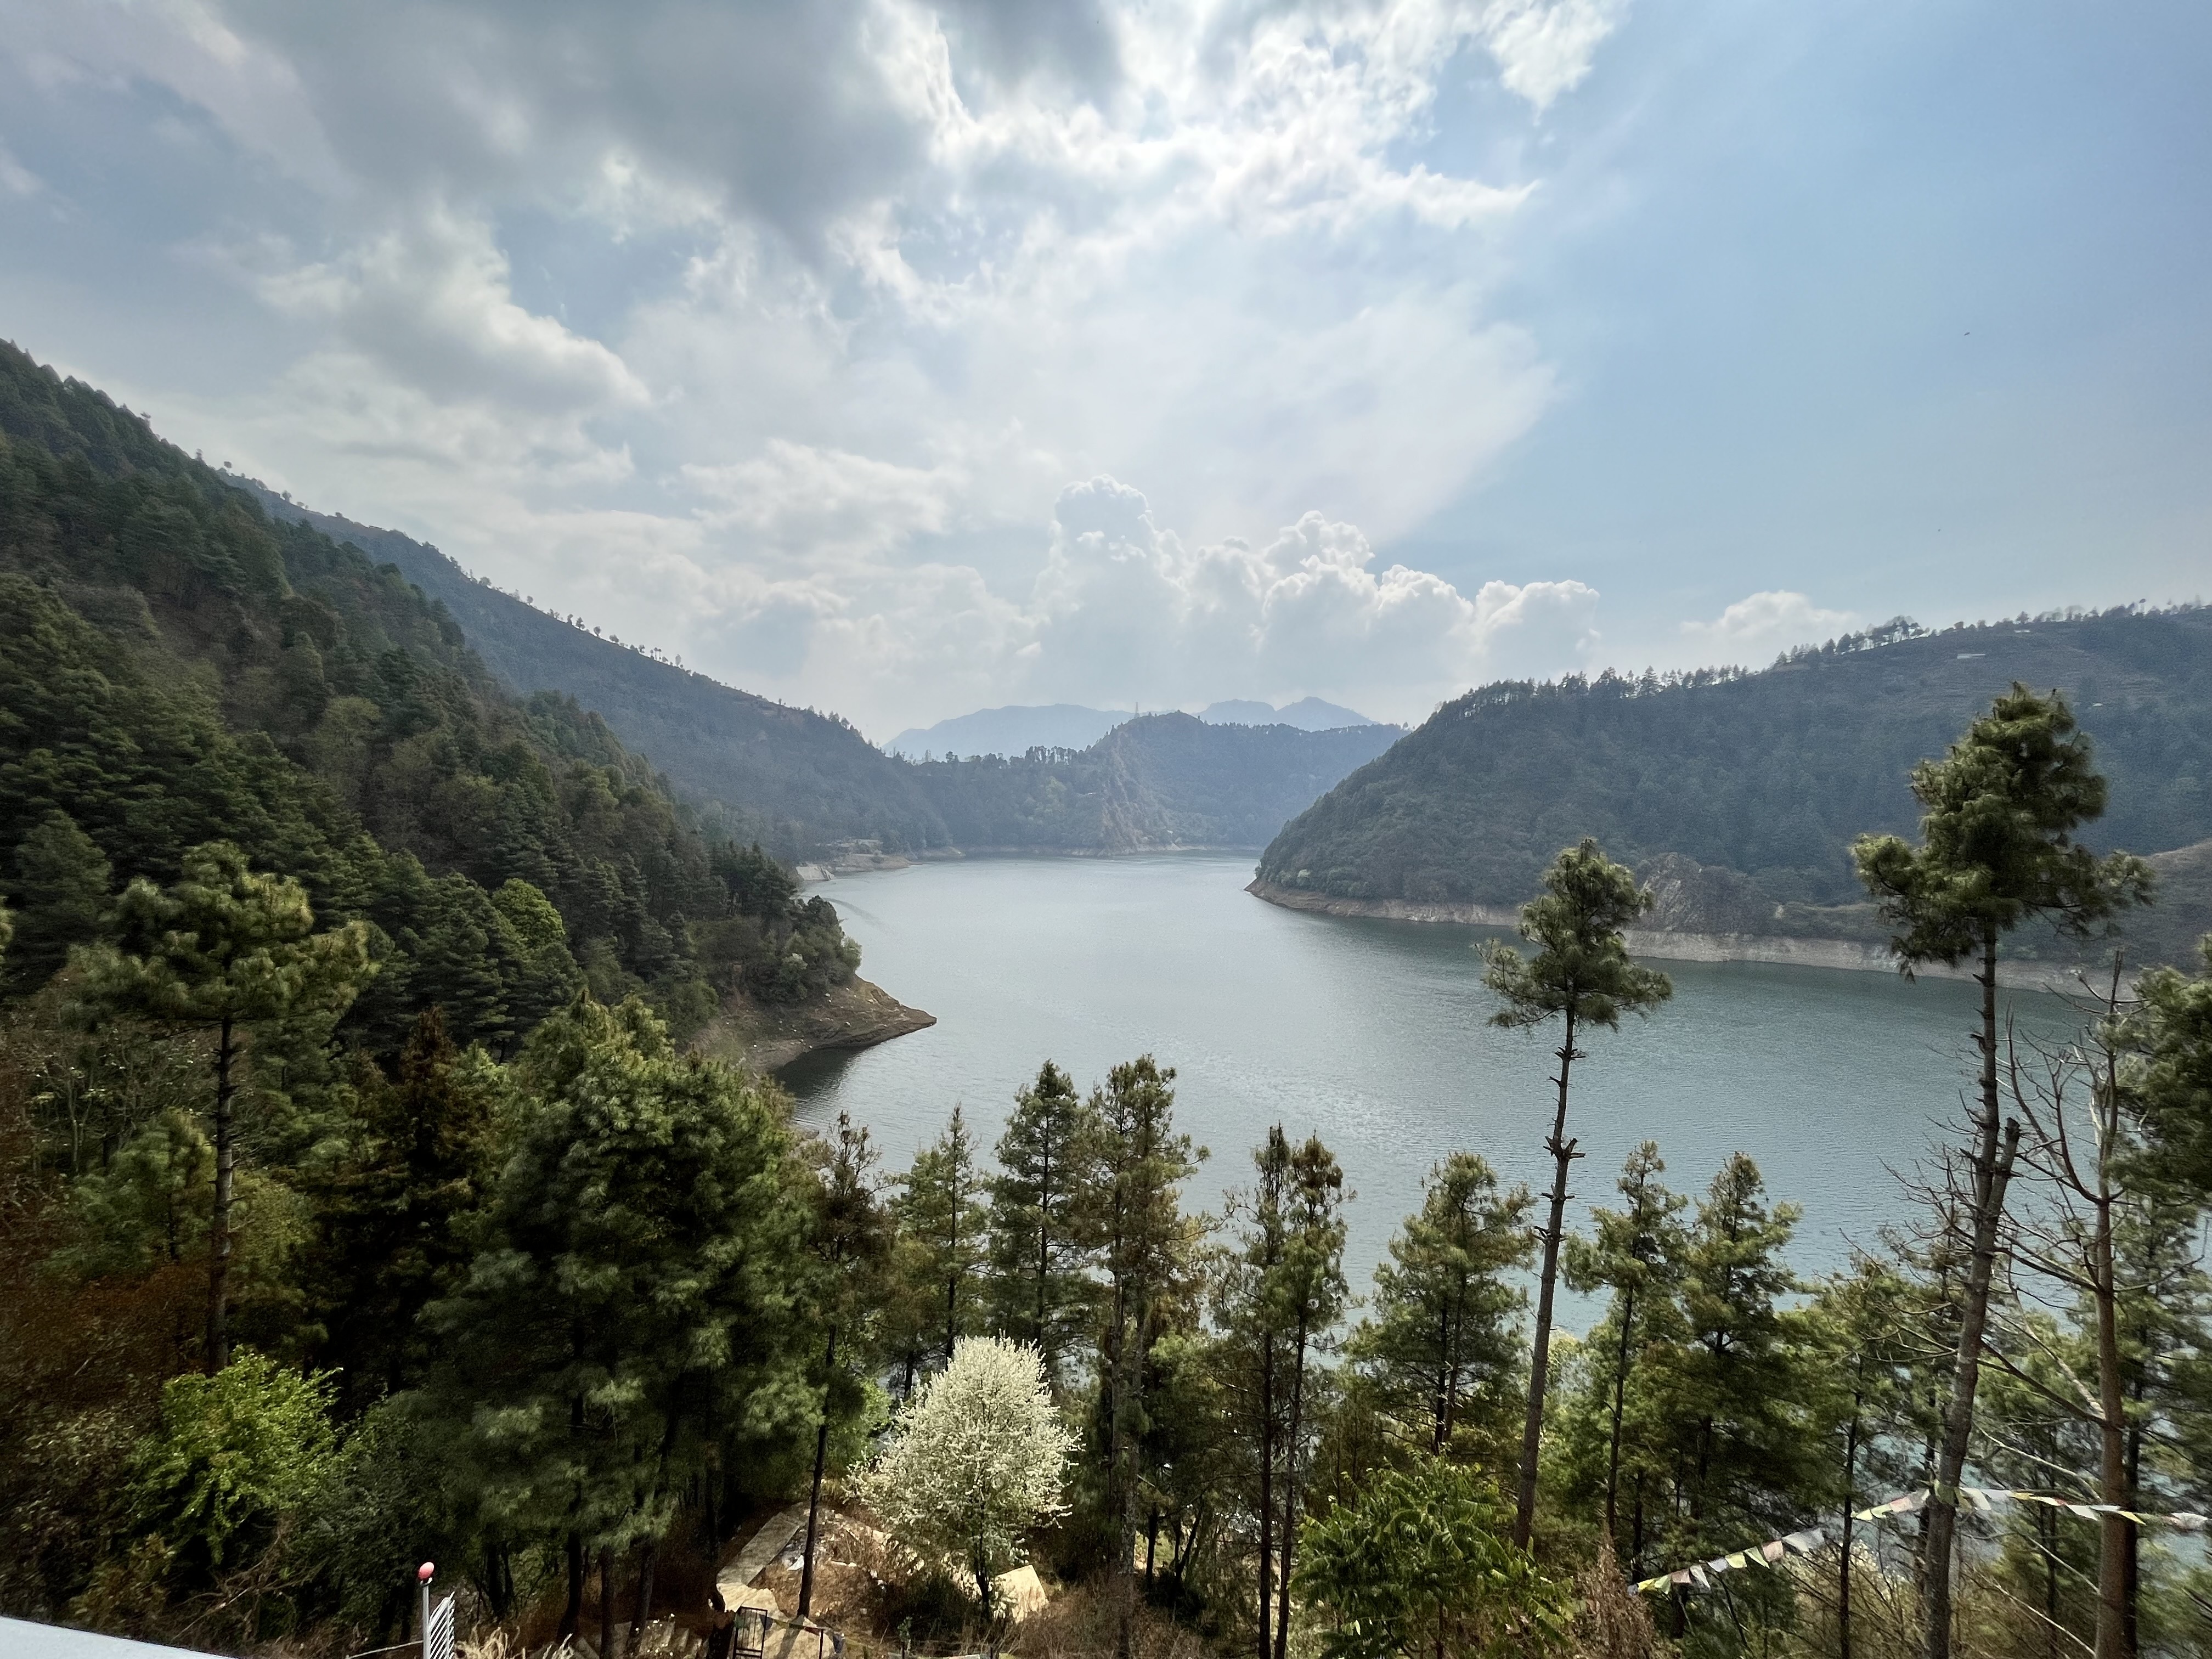 Overview of the Kulekhani Dam, Nepal